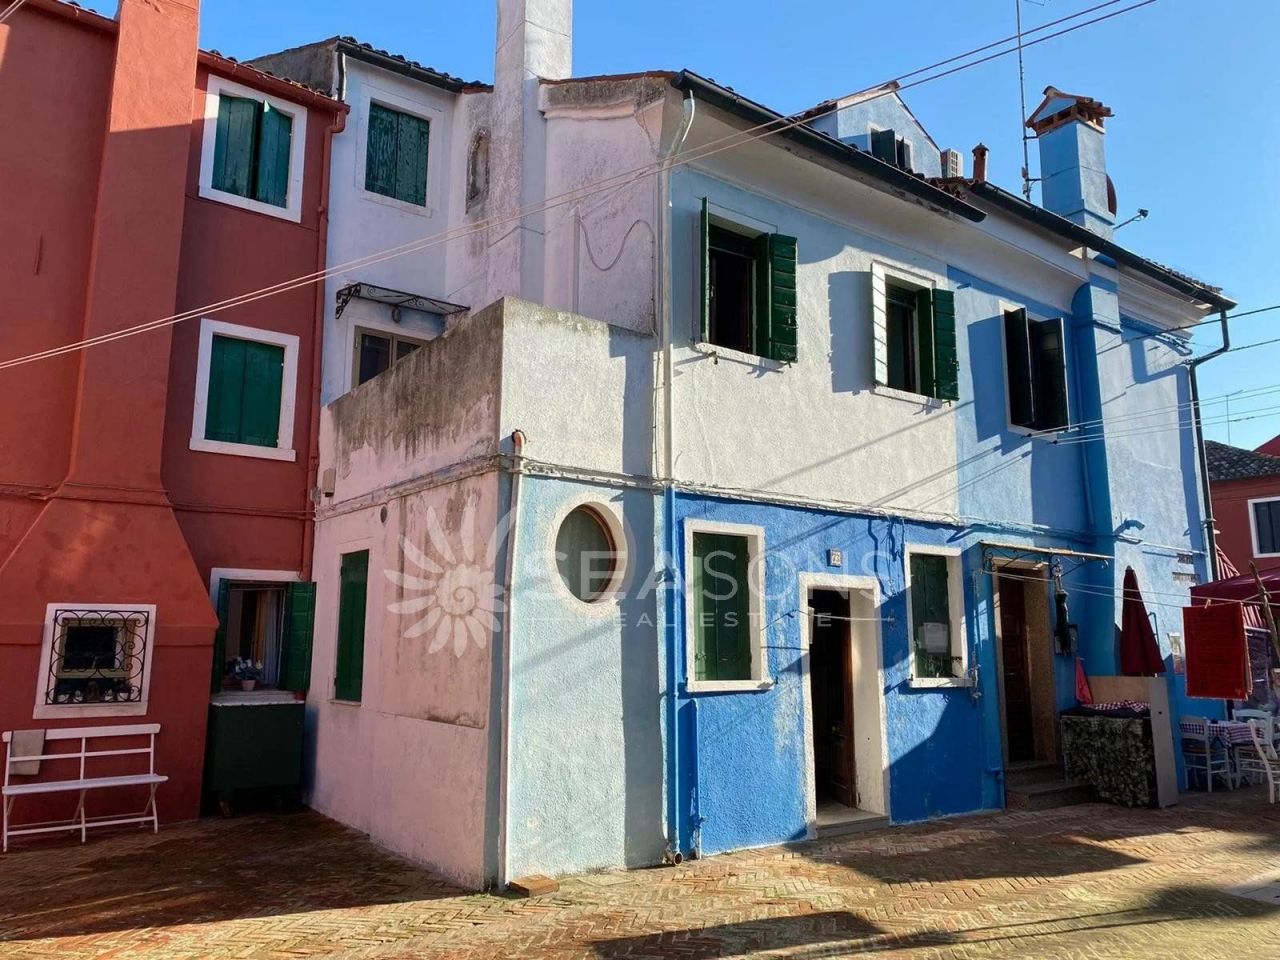 Casa en Venecia, Italia - imagen 1